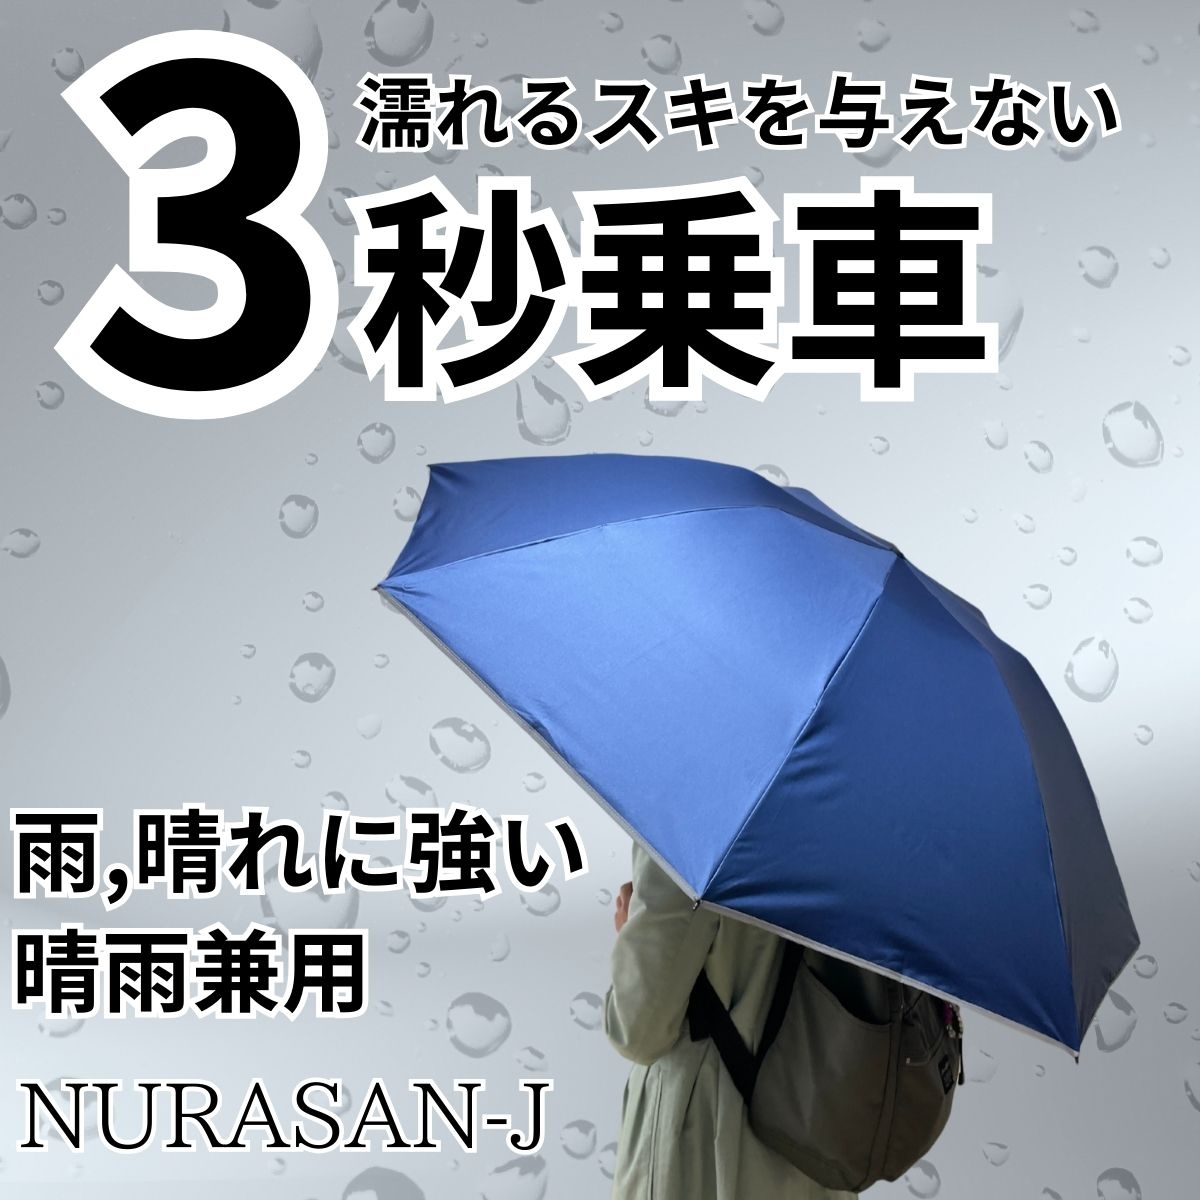 3秒乗車。だれも濡らさない晴雨兼用傘「NURASAN-J」4本セット